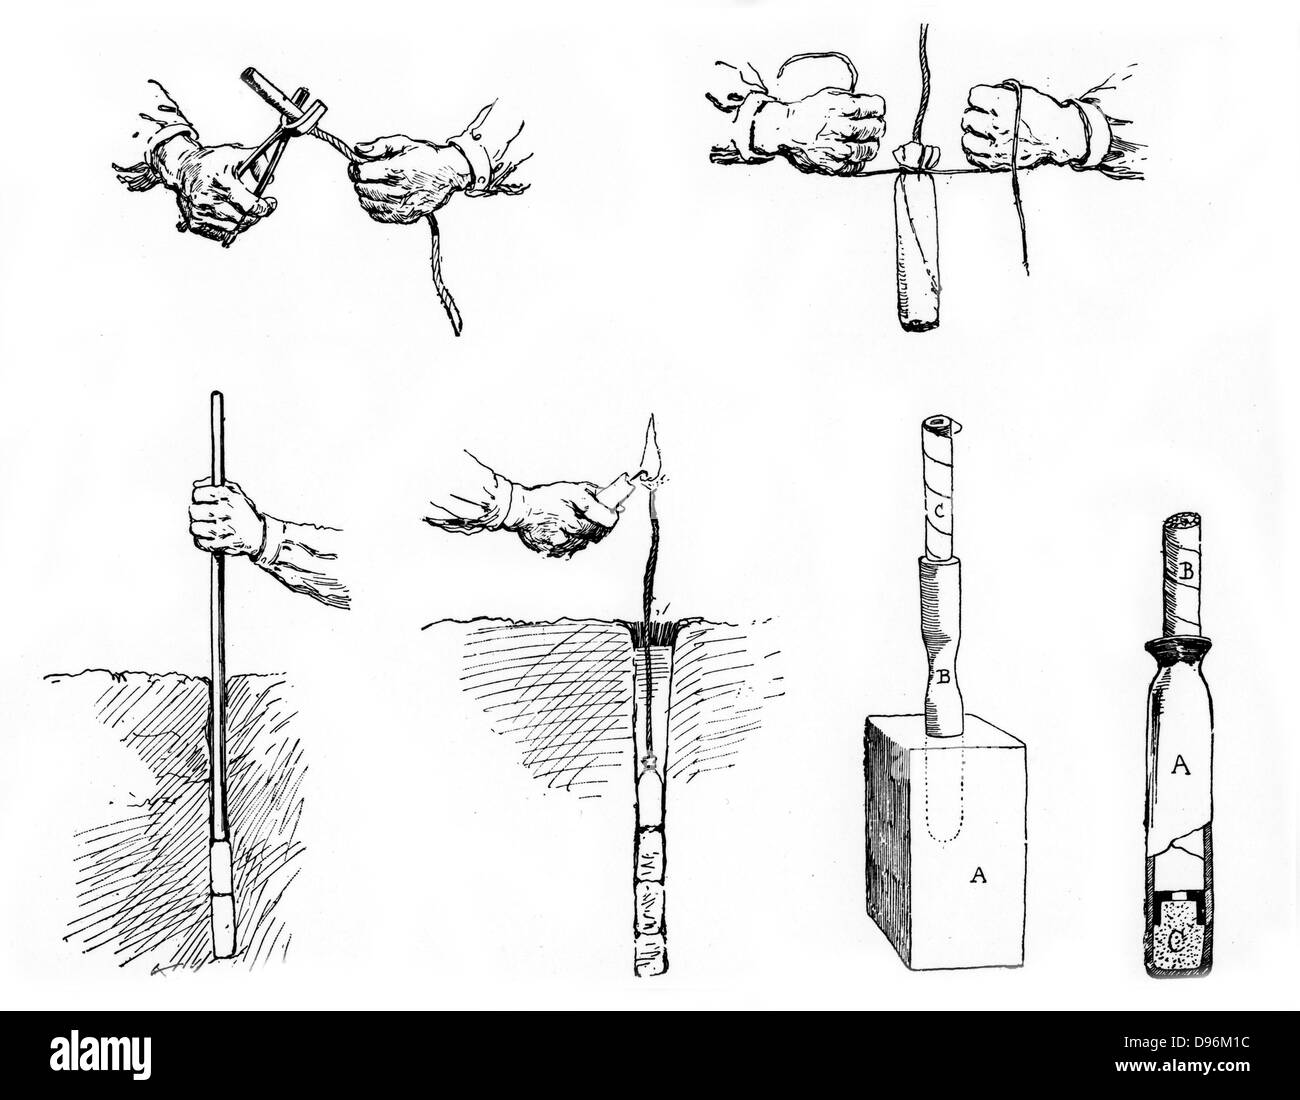 Methode der Vorbereitung und Einstellung einer Ladung Dynamit.  Von "La Science Illustree", Paris, um 1890 Stockfoto